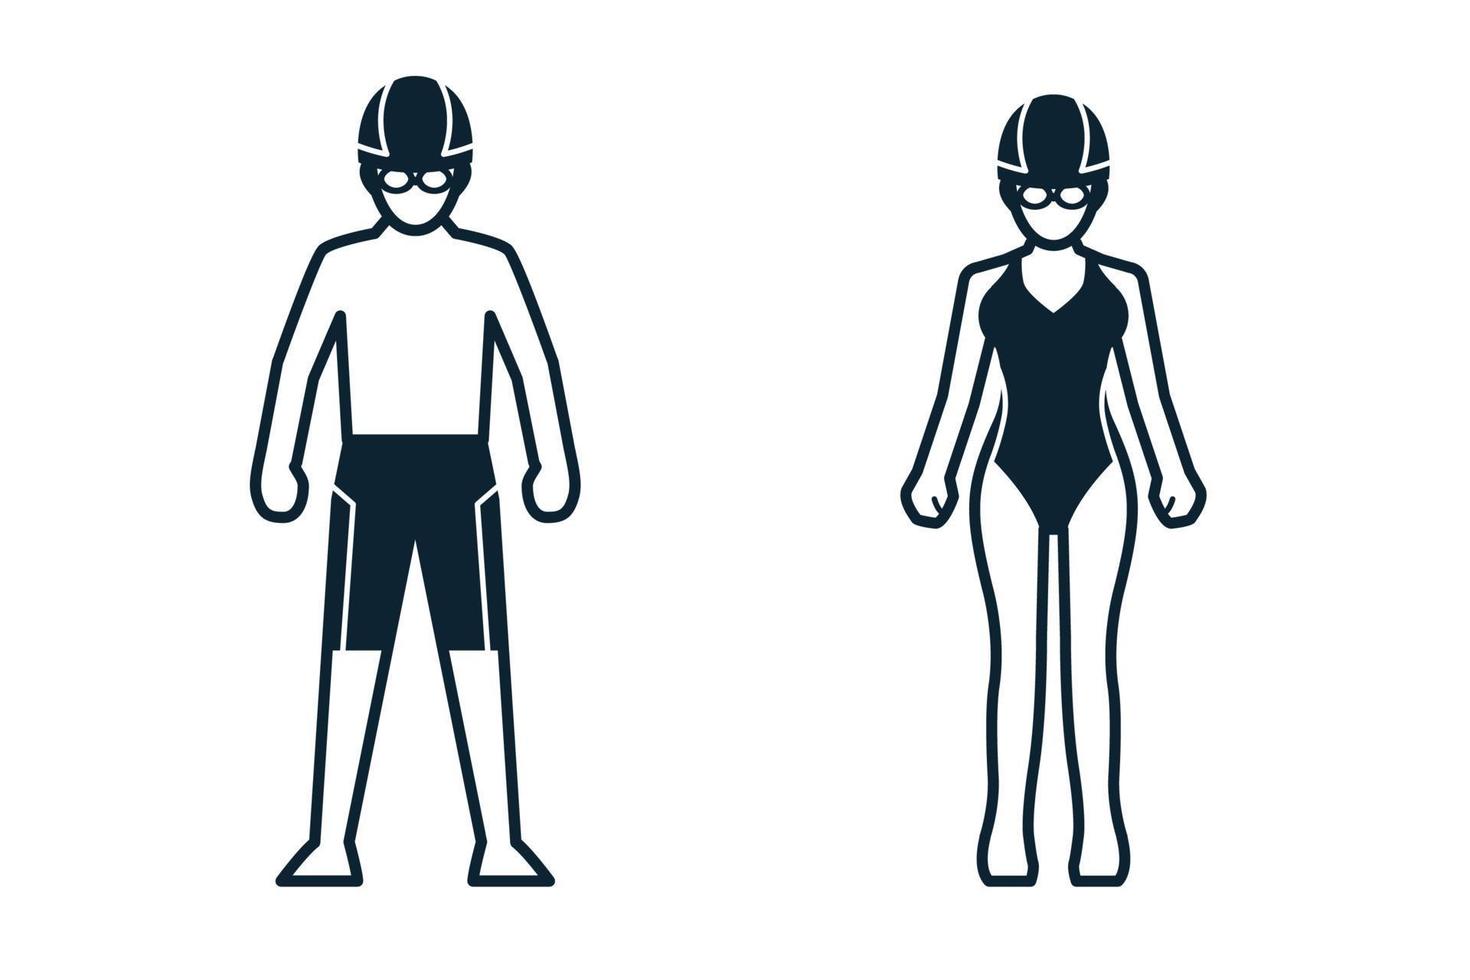 zwemmer, sportspeler, mensen en kledingpictogrammen met witte achtergrond vector